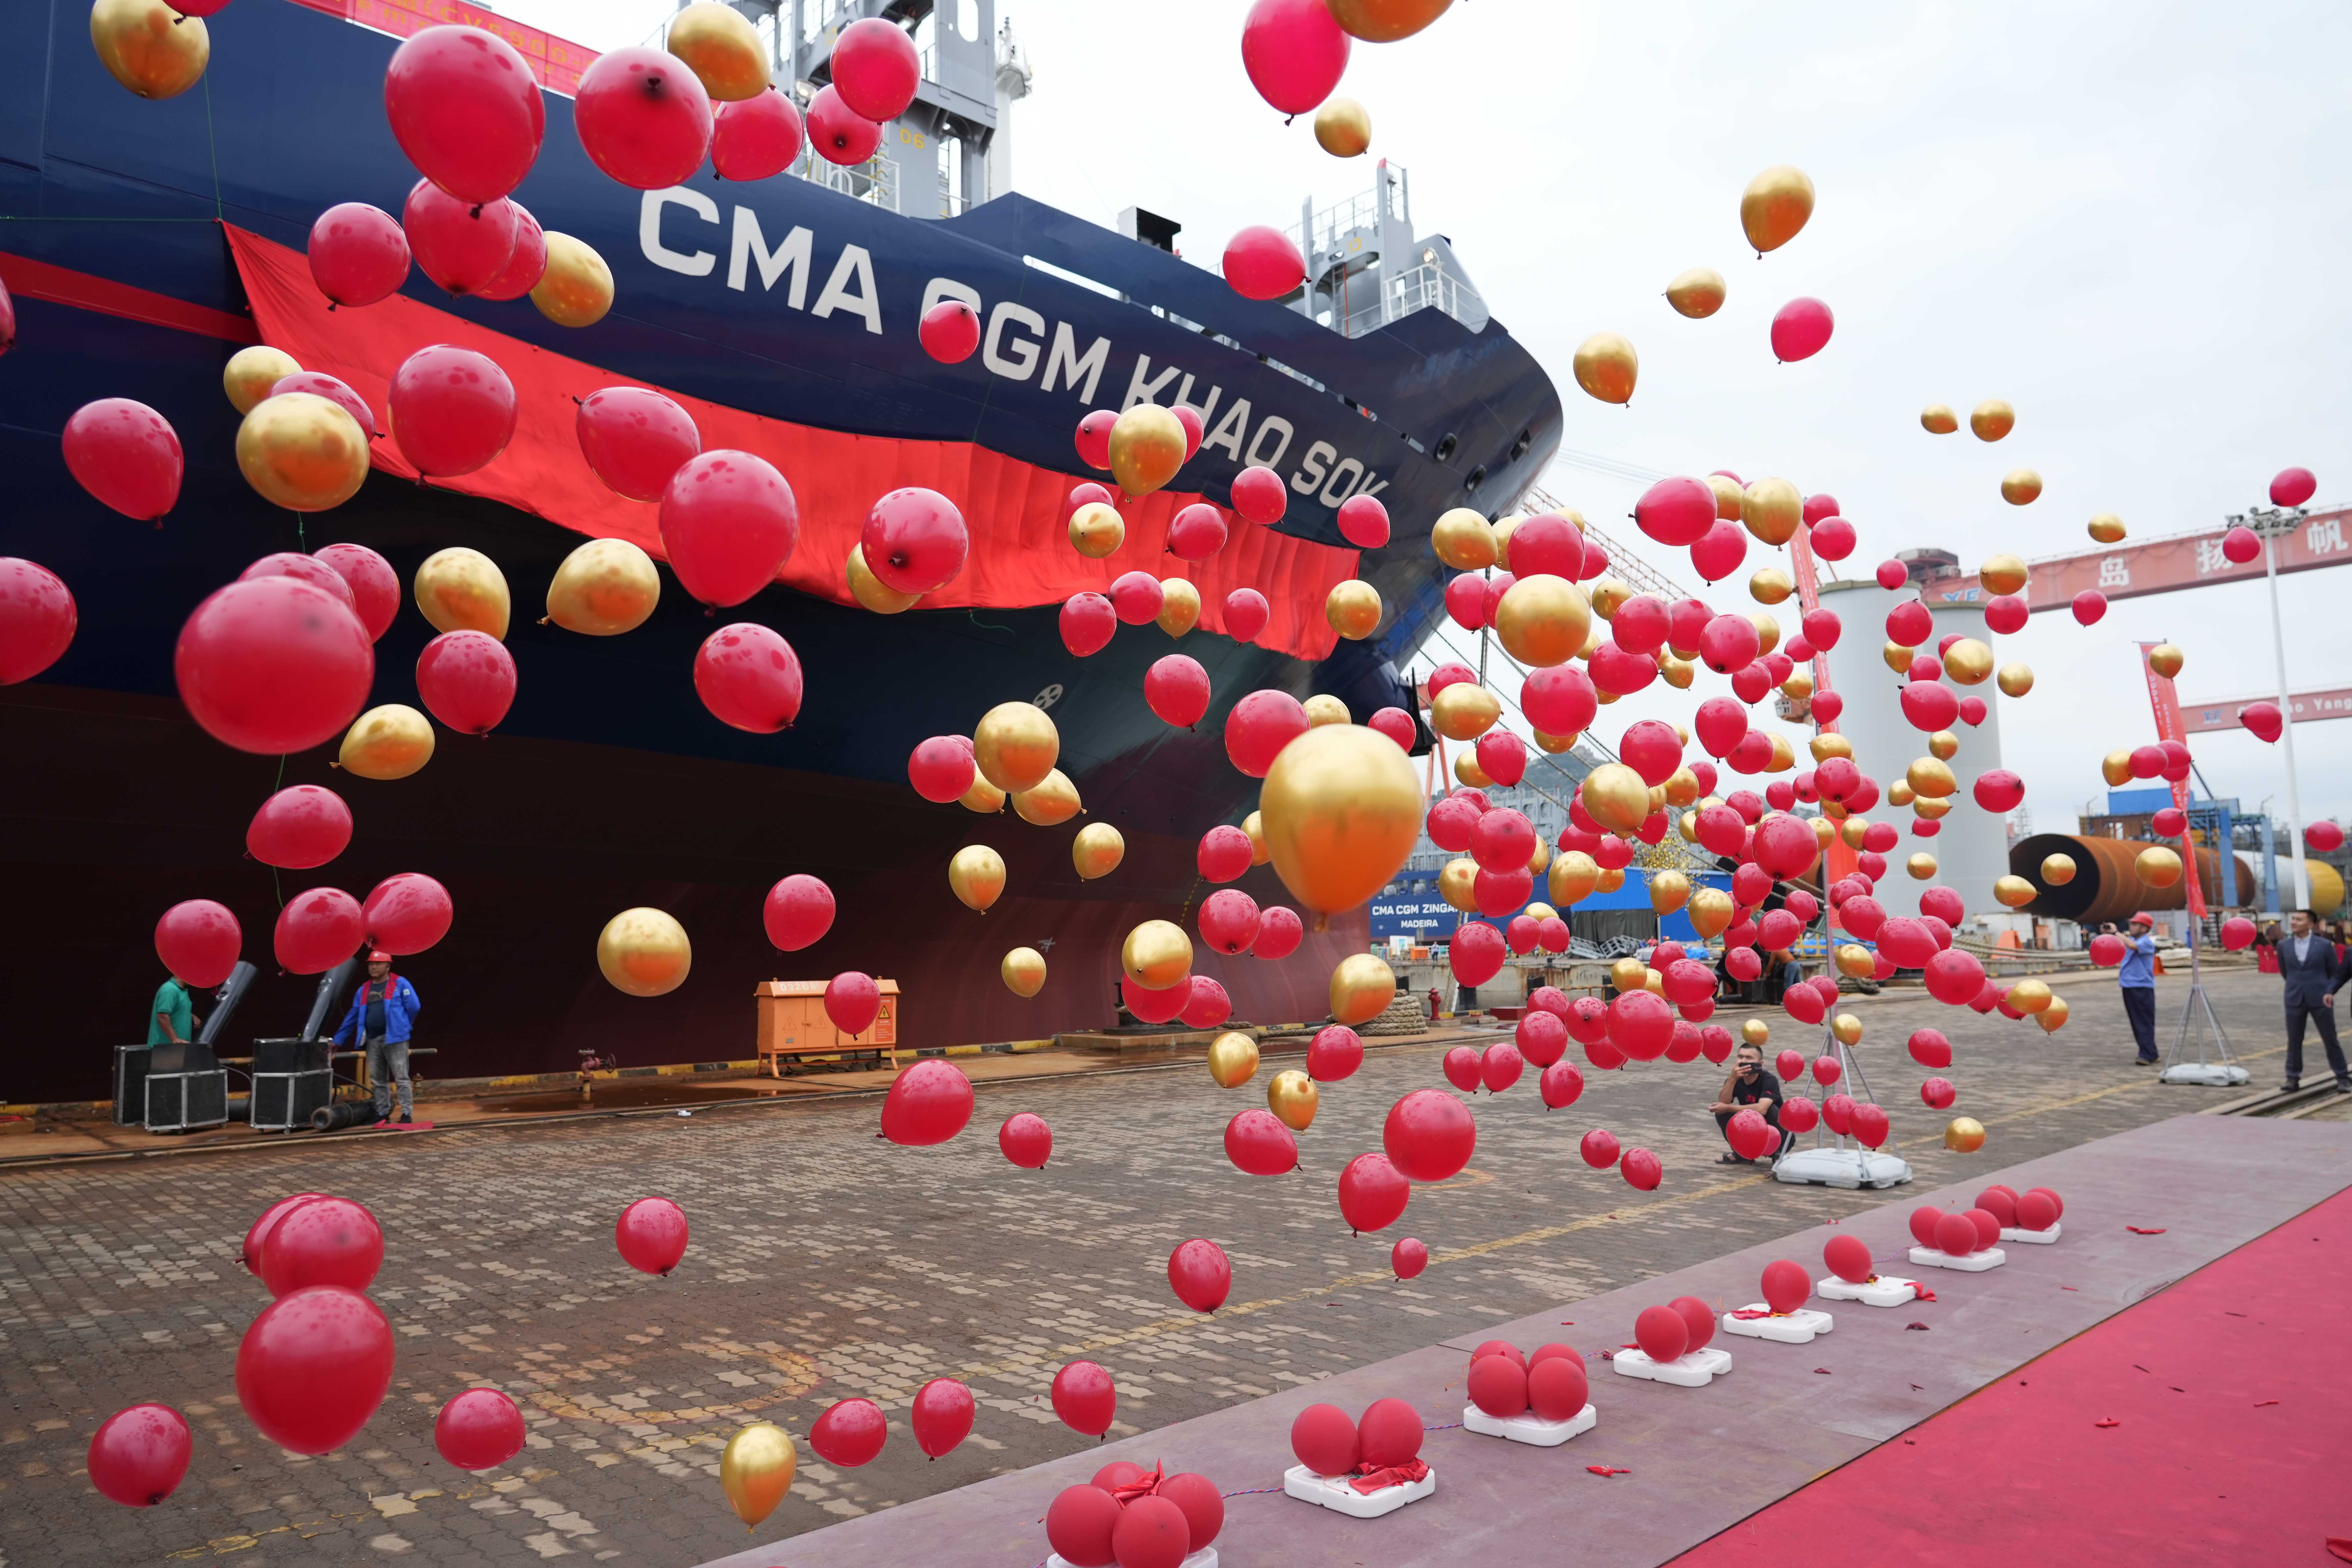 青船公司5900TEU集装箱船“CMA CGM KHAO SOK”轮成功命名